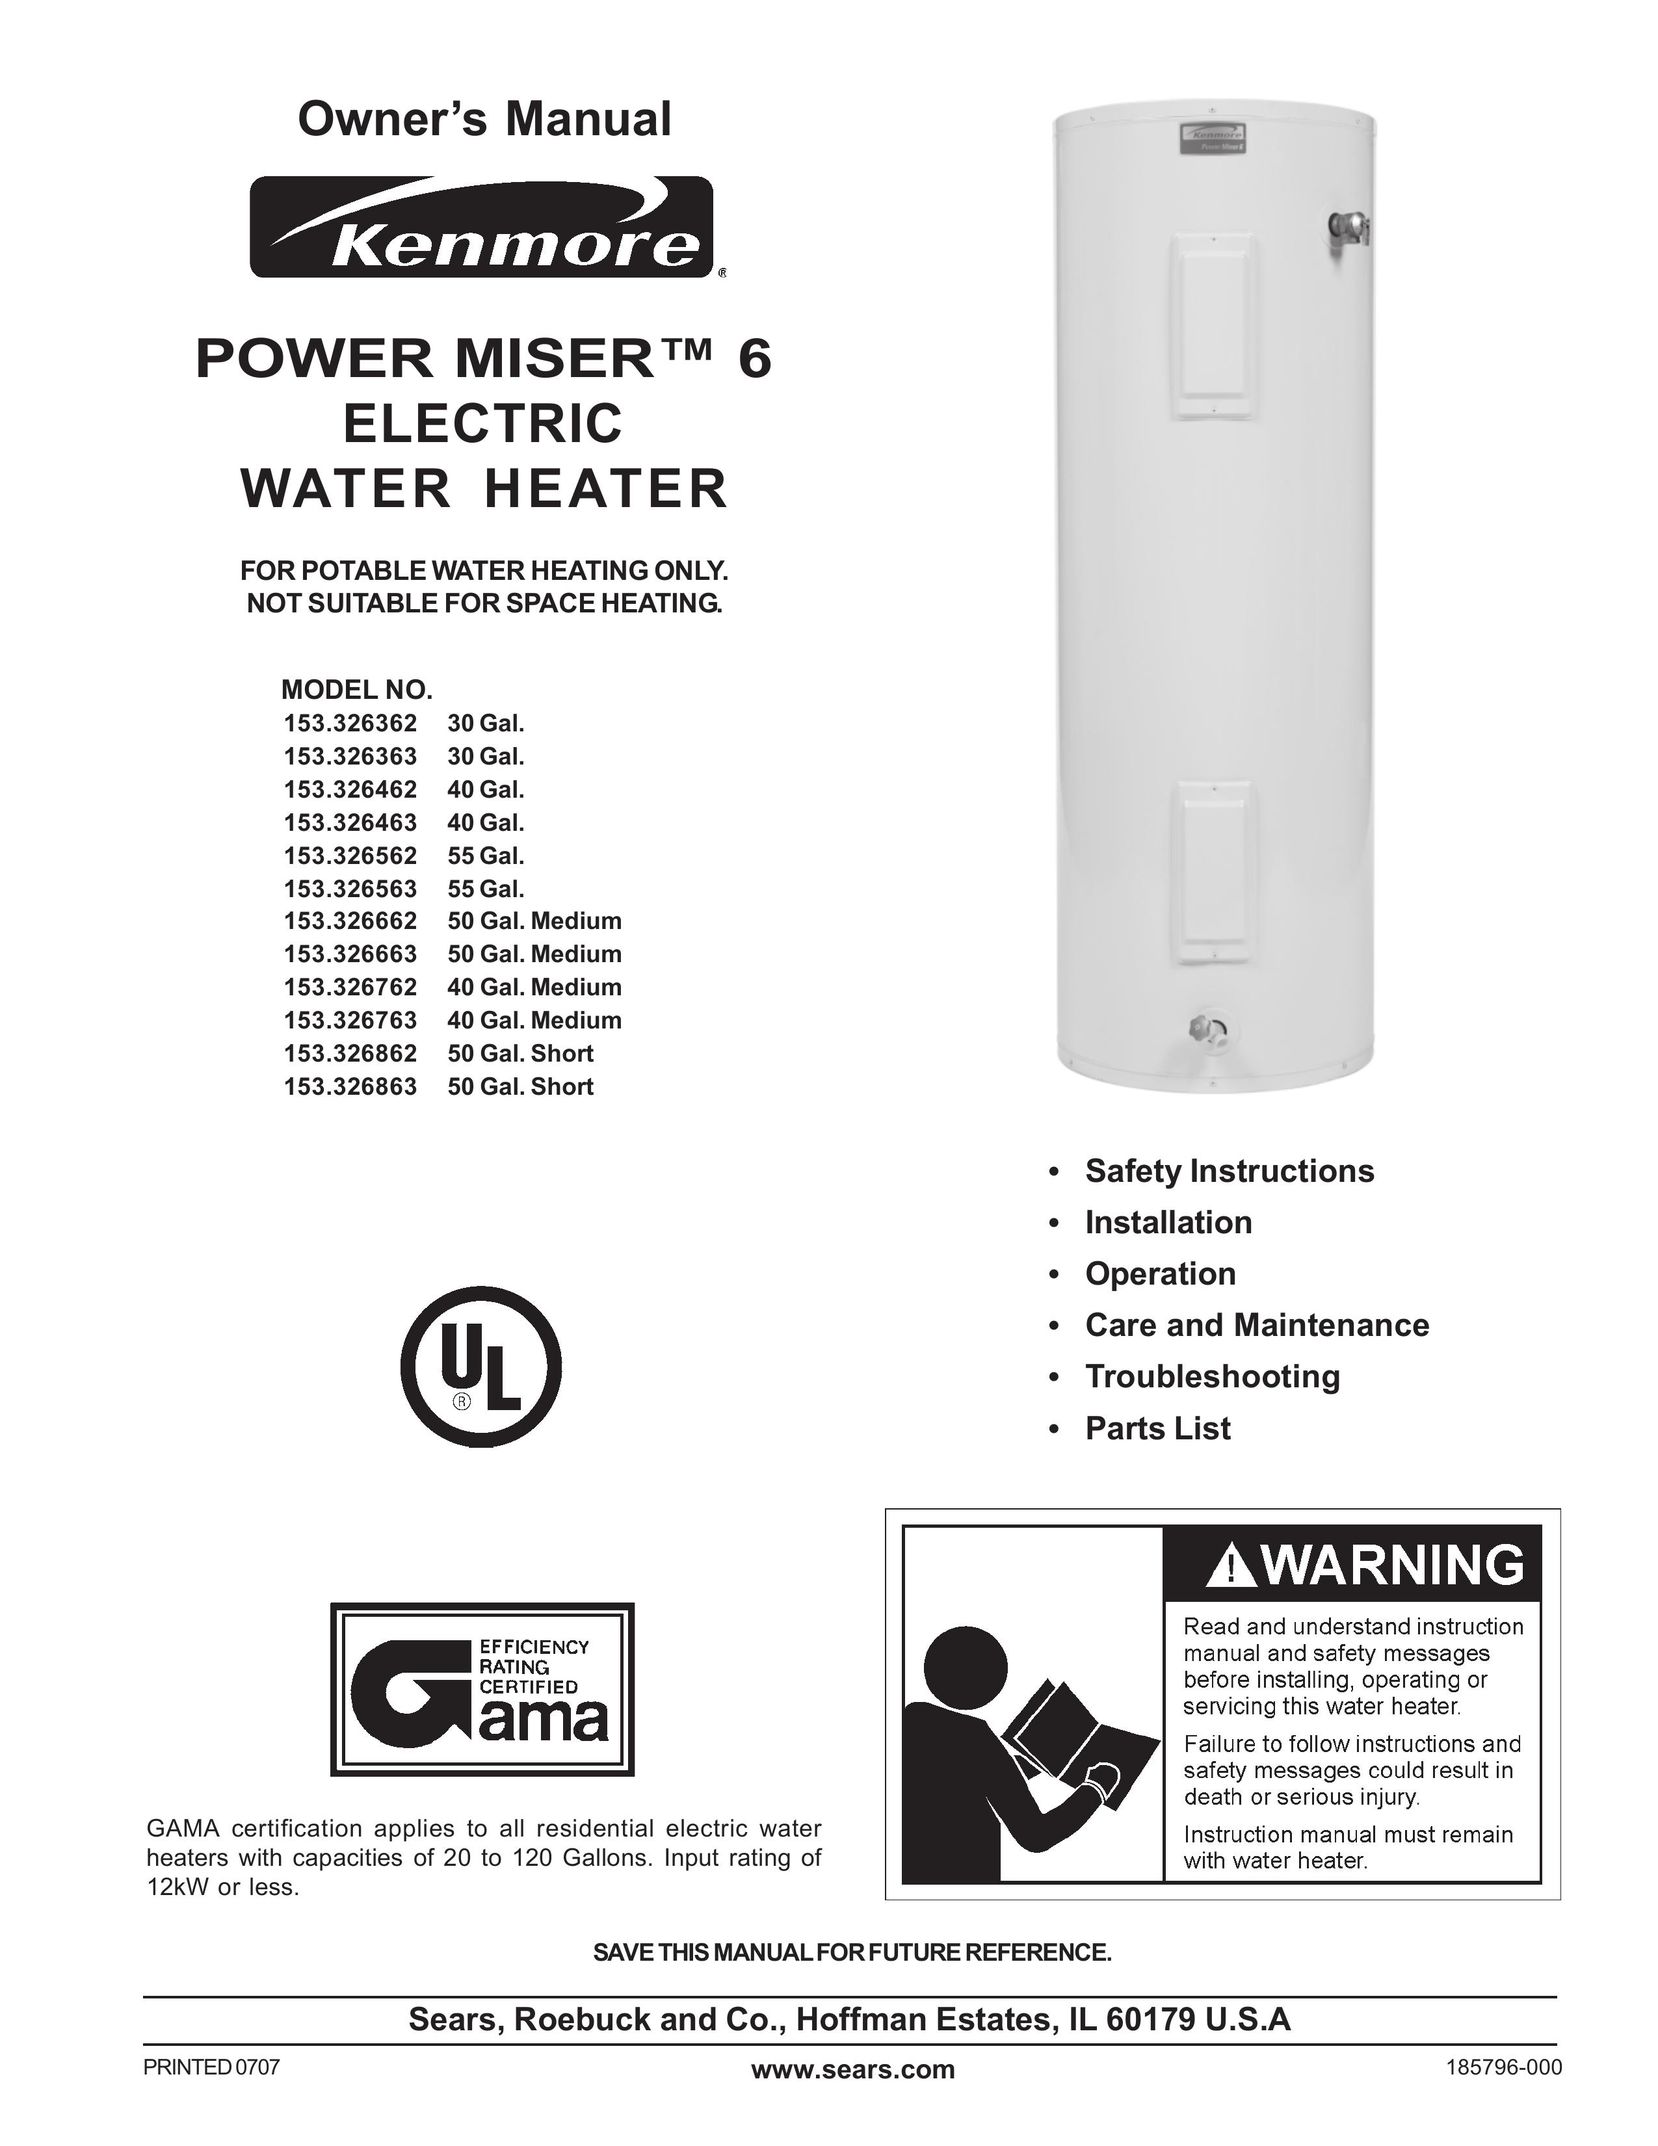 Sears 153.326662 50 GAL. MEDIUM Water Heater User Manual